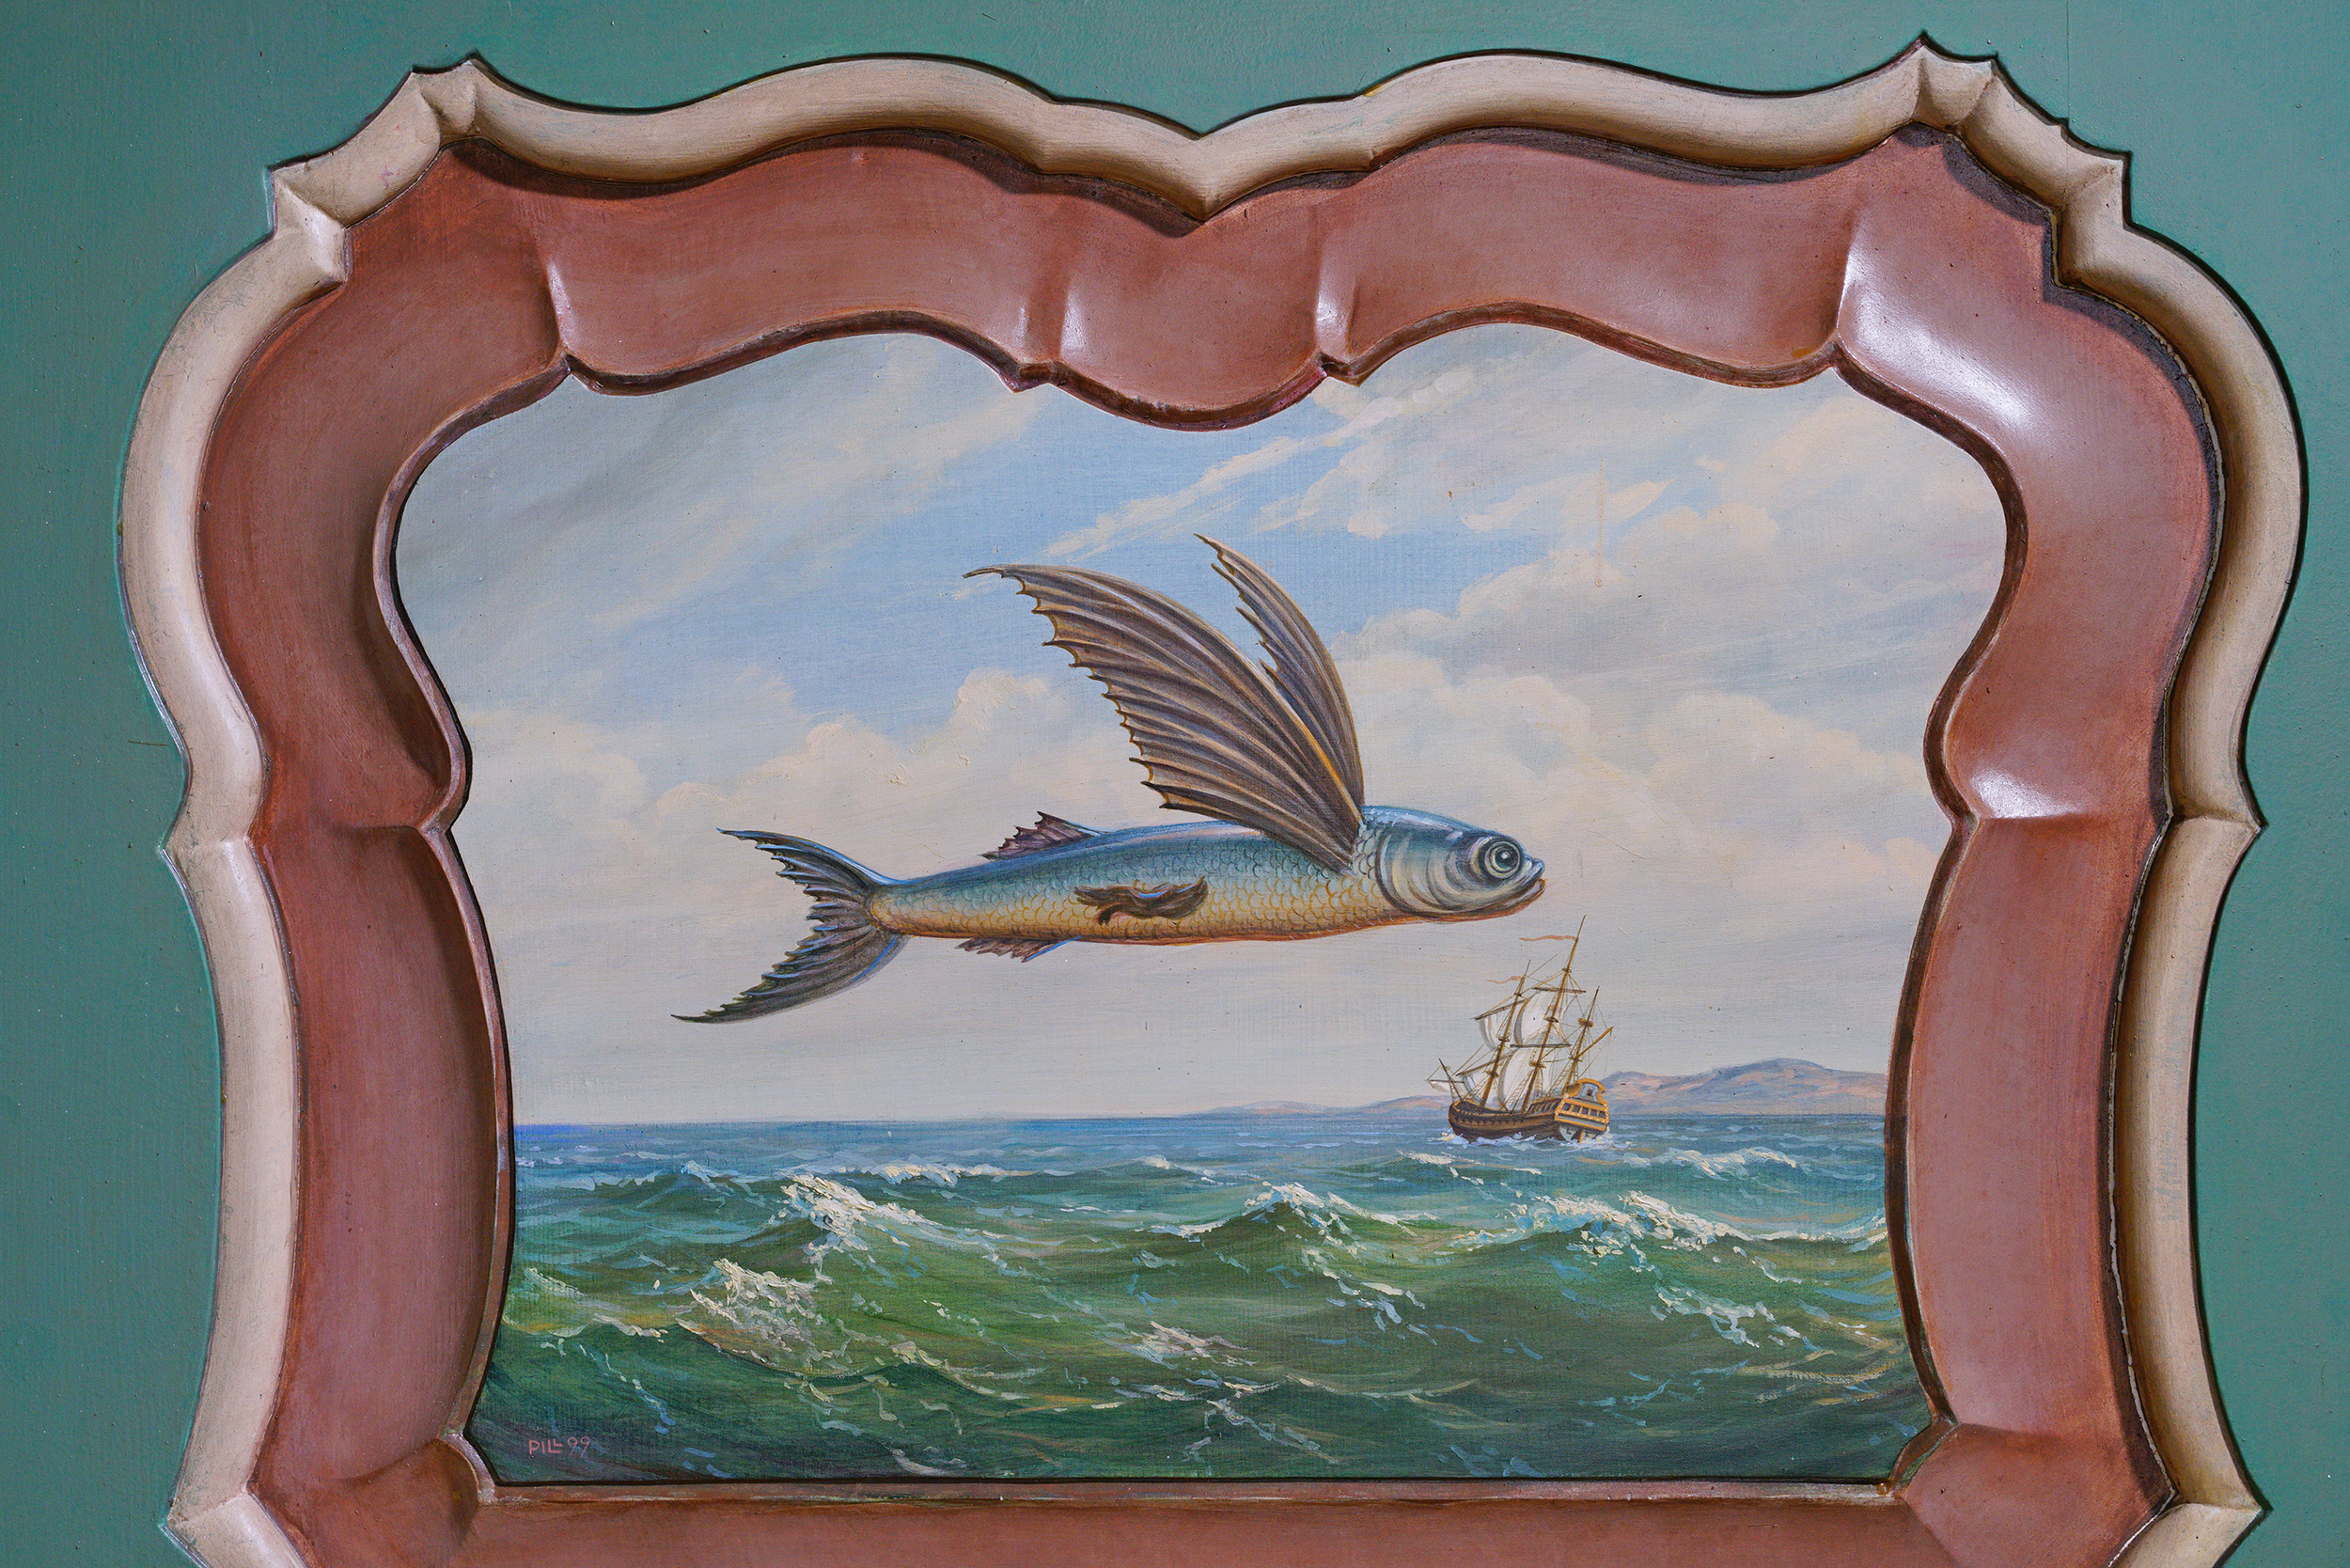 Malunek na lamperii. Latająca ryba ze skrzydłami. Poniżej falujące morze, w głębi płynący statek.